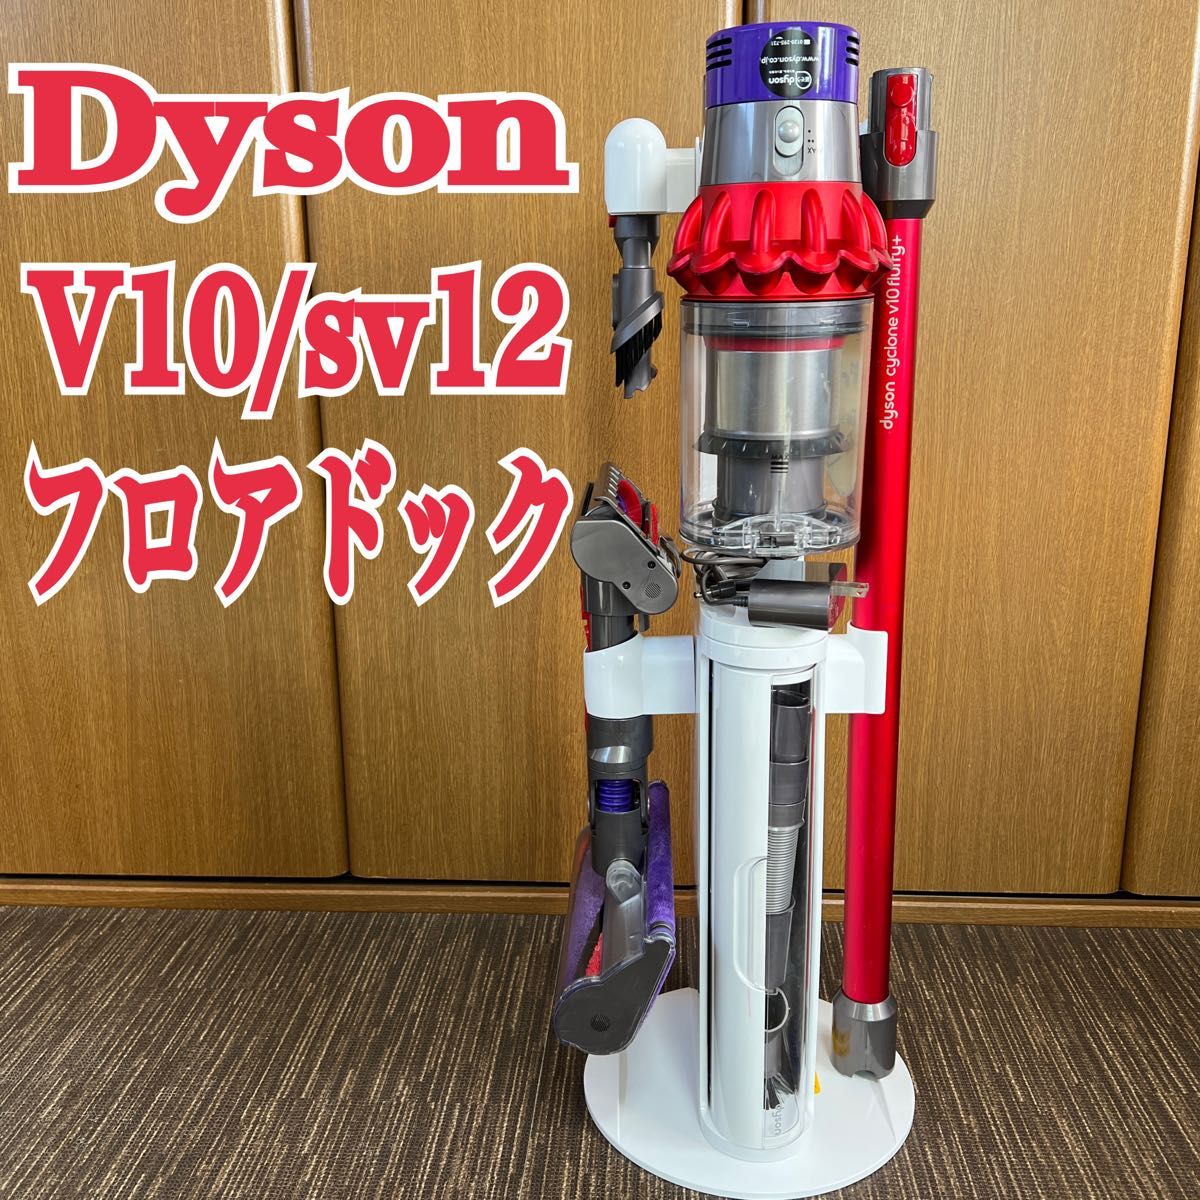 Dyson V10/sv12＋専用フロアスタンドセット バッテリー稼働64分